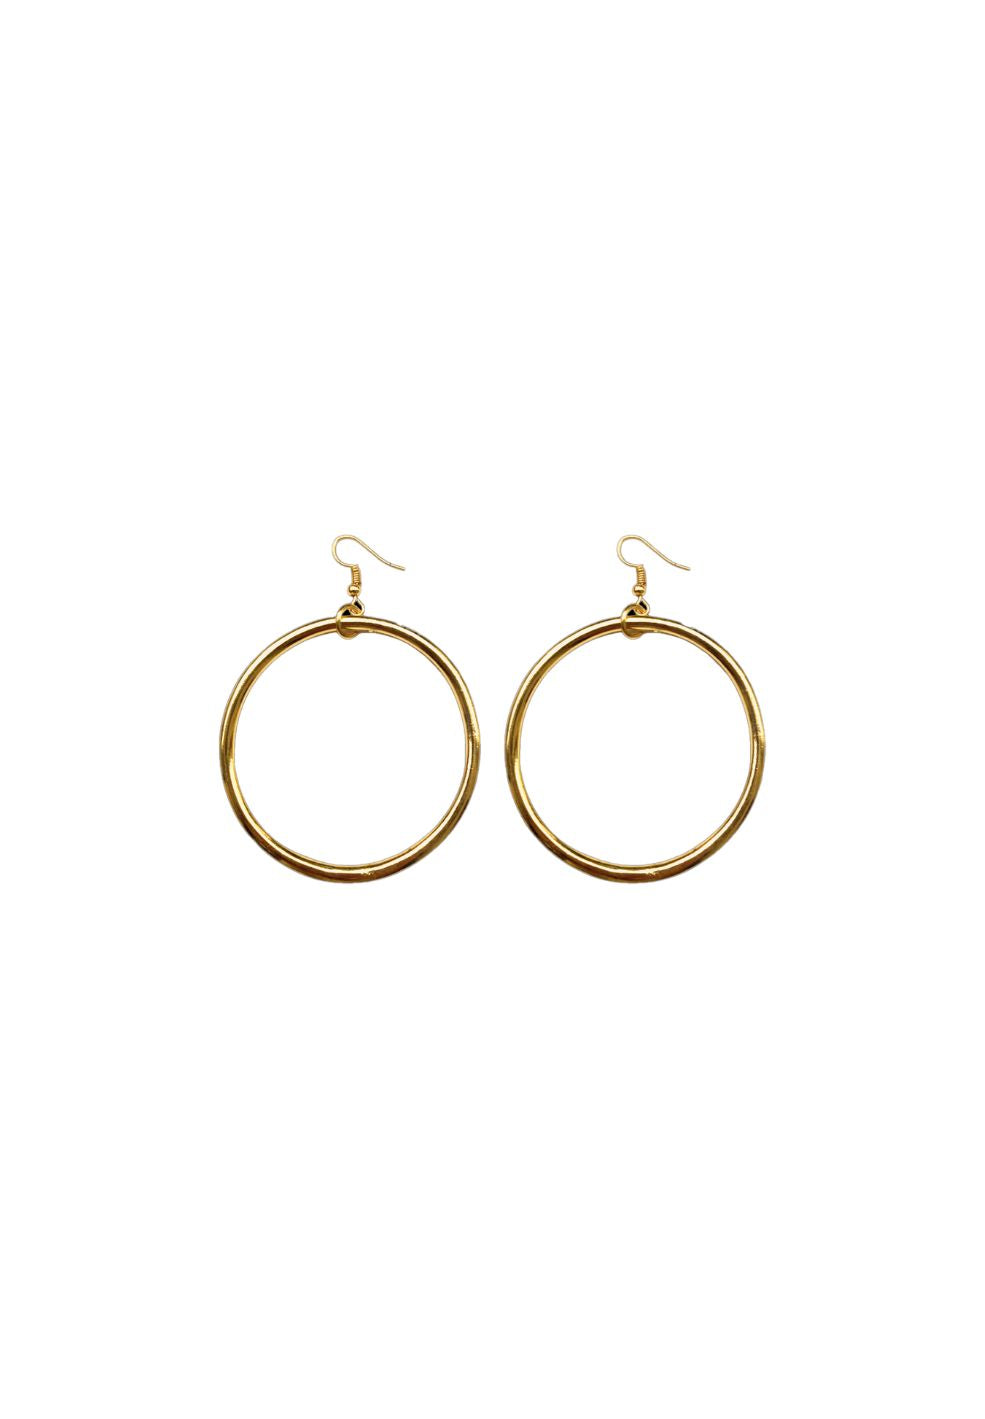 Saloon Gold Ring Earrings